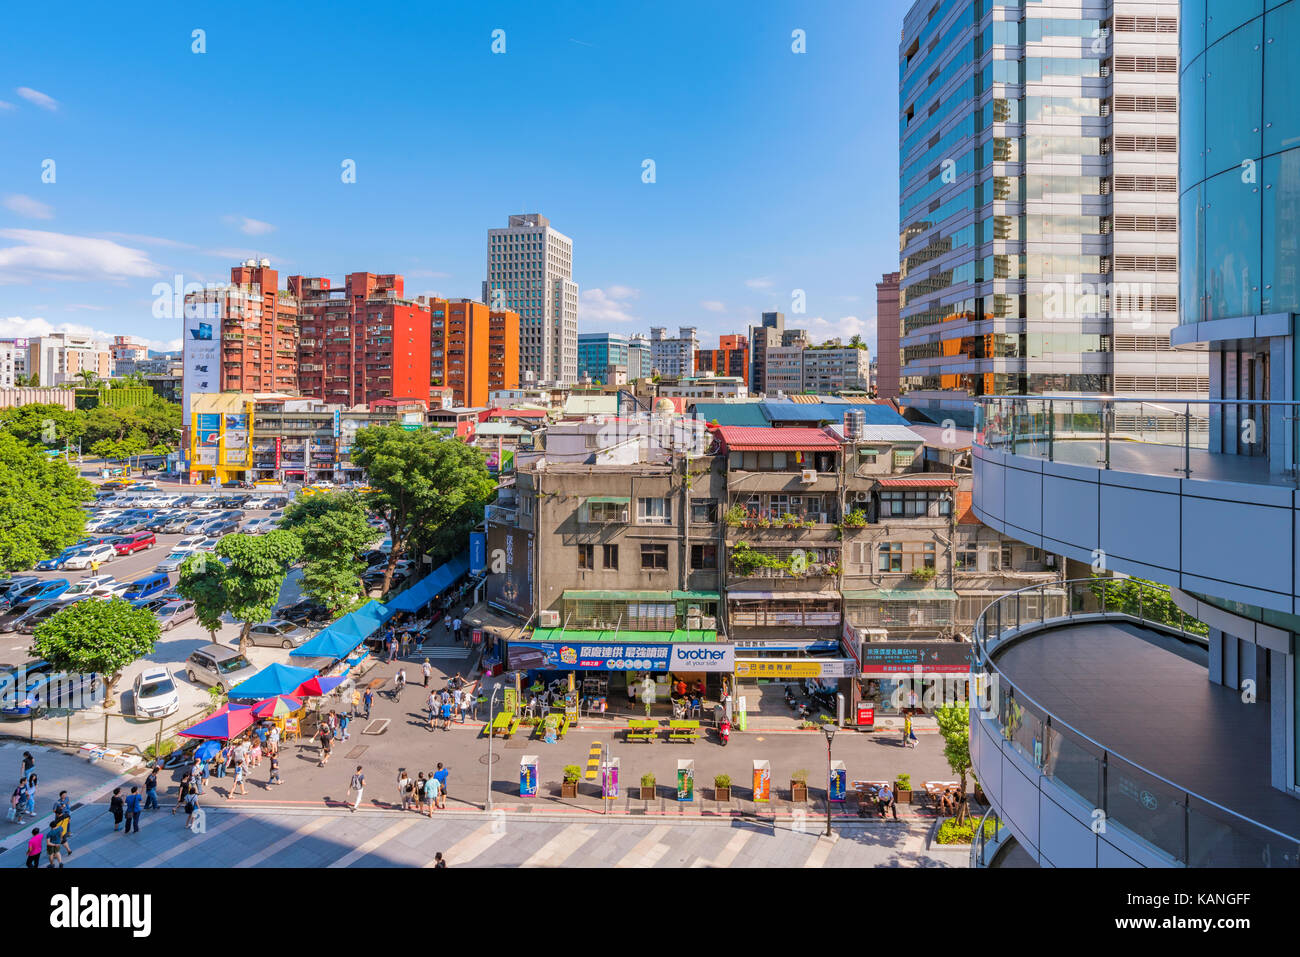 TAIPEI, Taiwan - 15 Luglio: questa è una vista del Guanghua electronics mercato e Syntrend mall che è un'area dedicata alla vendita di beni di consumo electroni Foto Stock